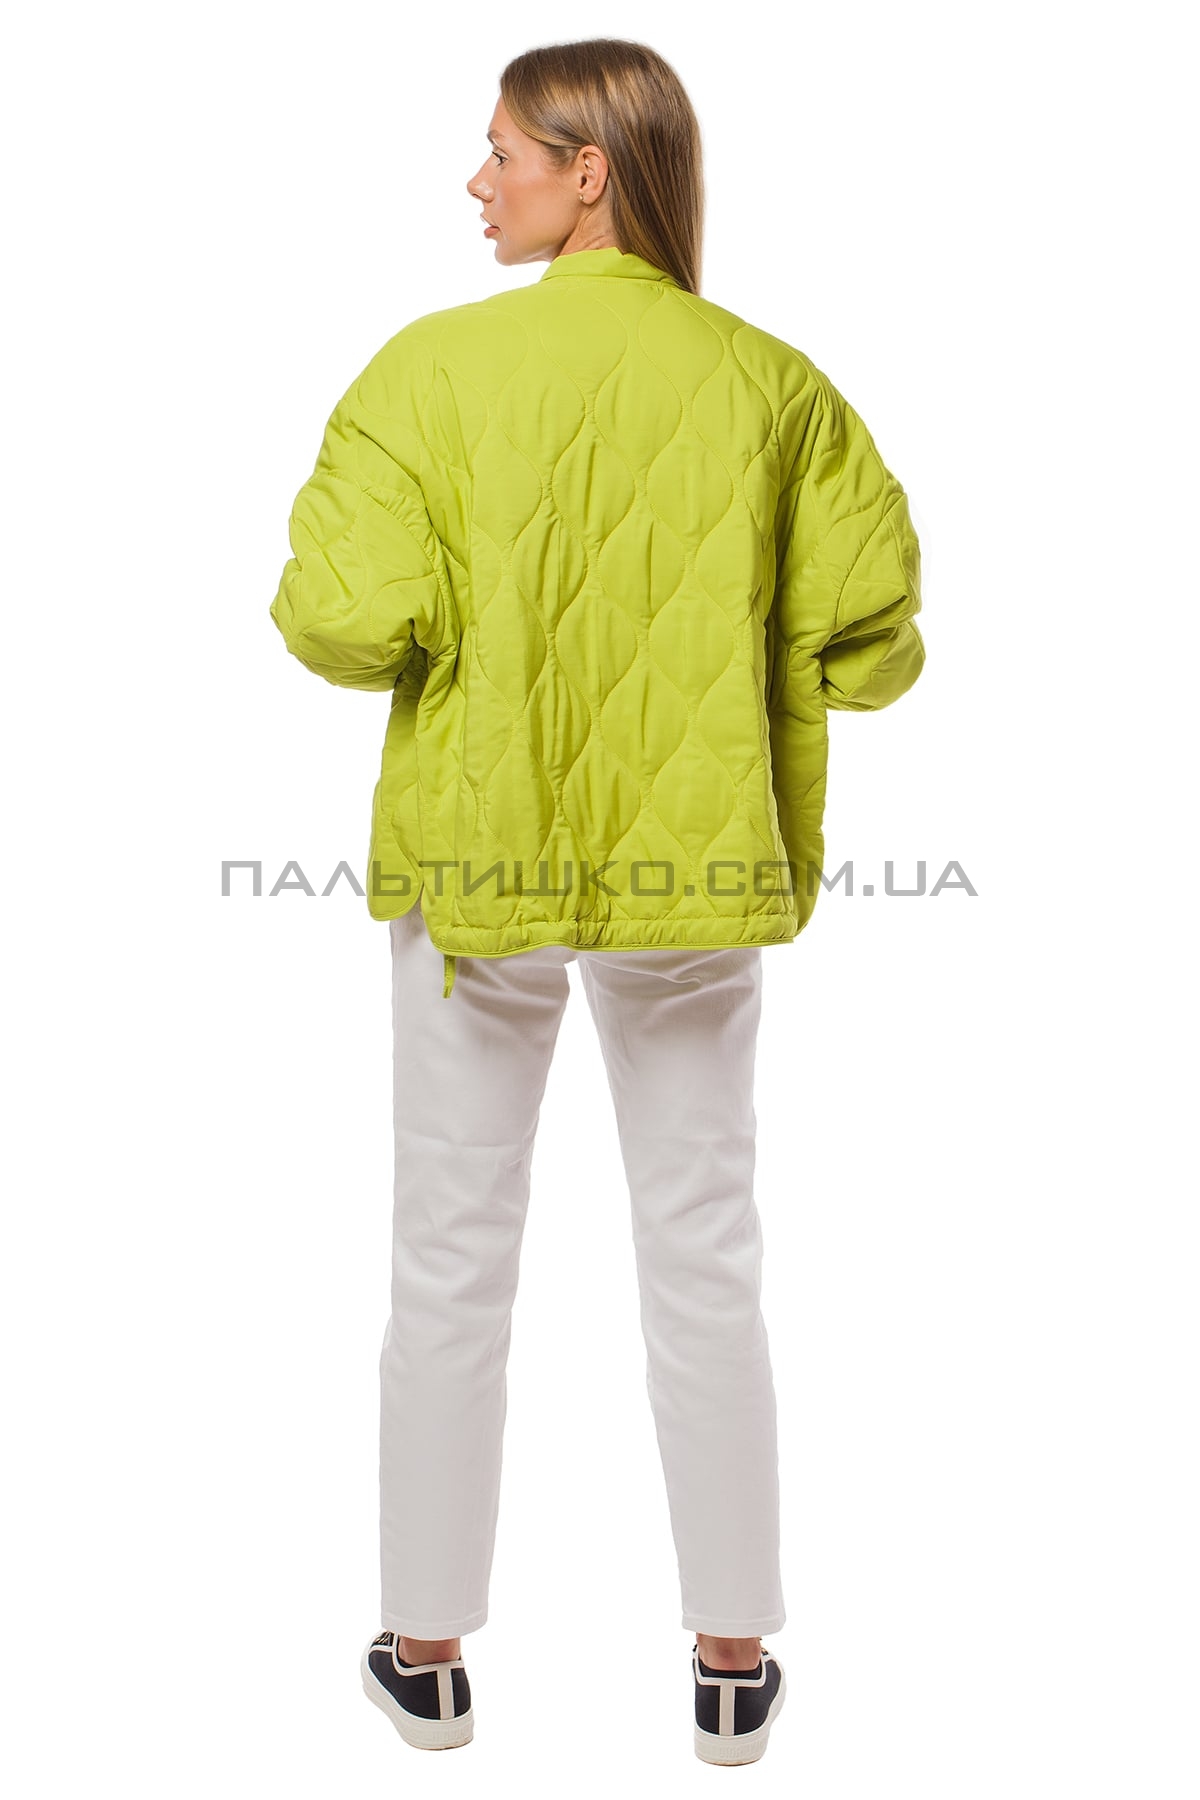  Жіноча коротка лимонна куртка